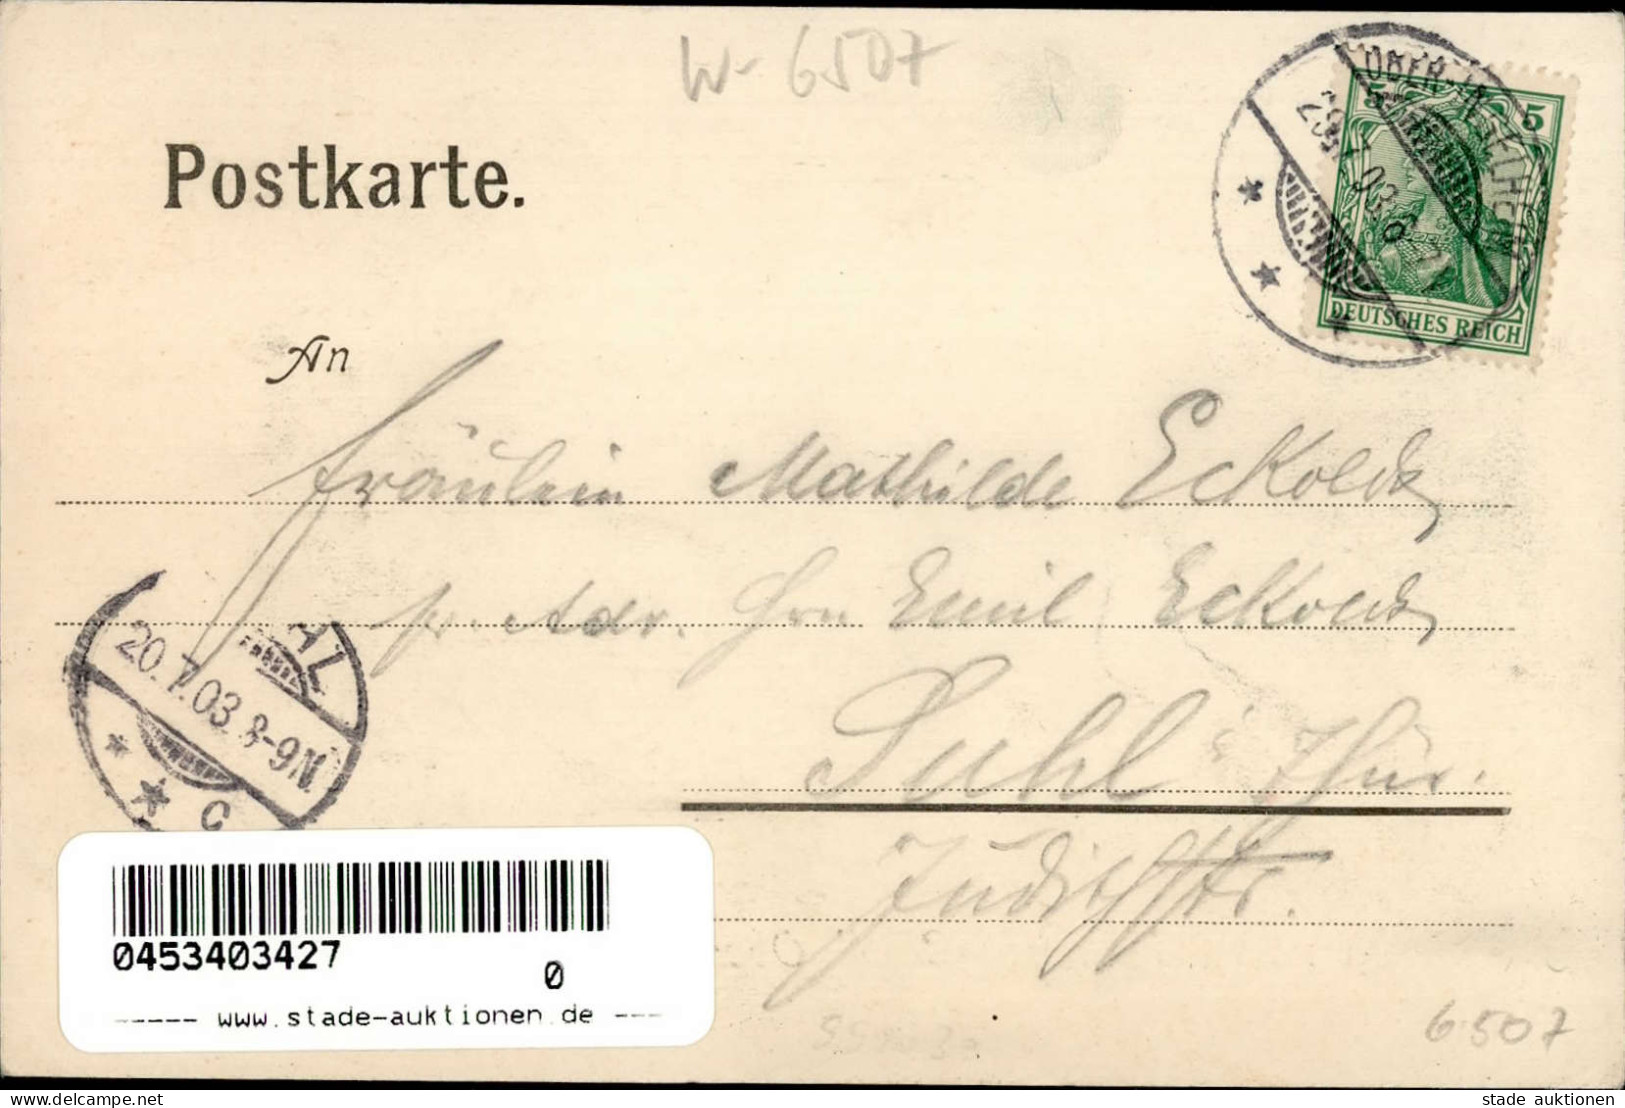 Ober-Ingelheim (6507) - Gruss Vom SCHNOKEN-CLUB 1903 I Montagnes - Andere & Zonder Classificatie